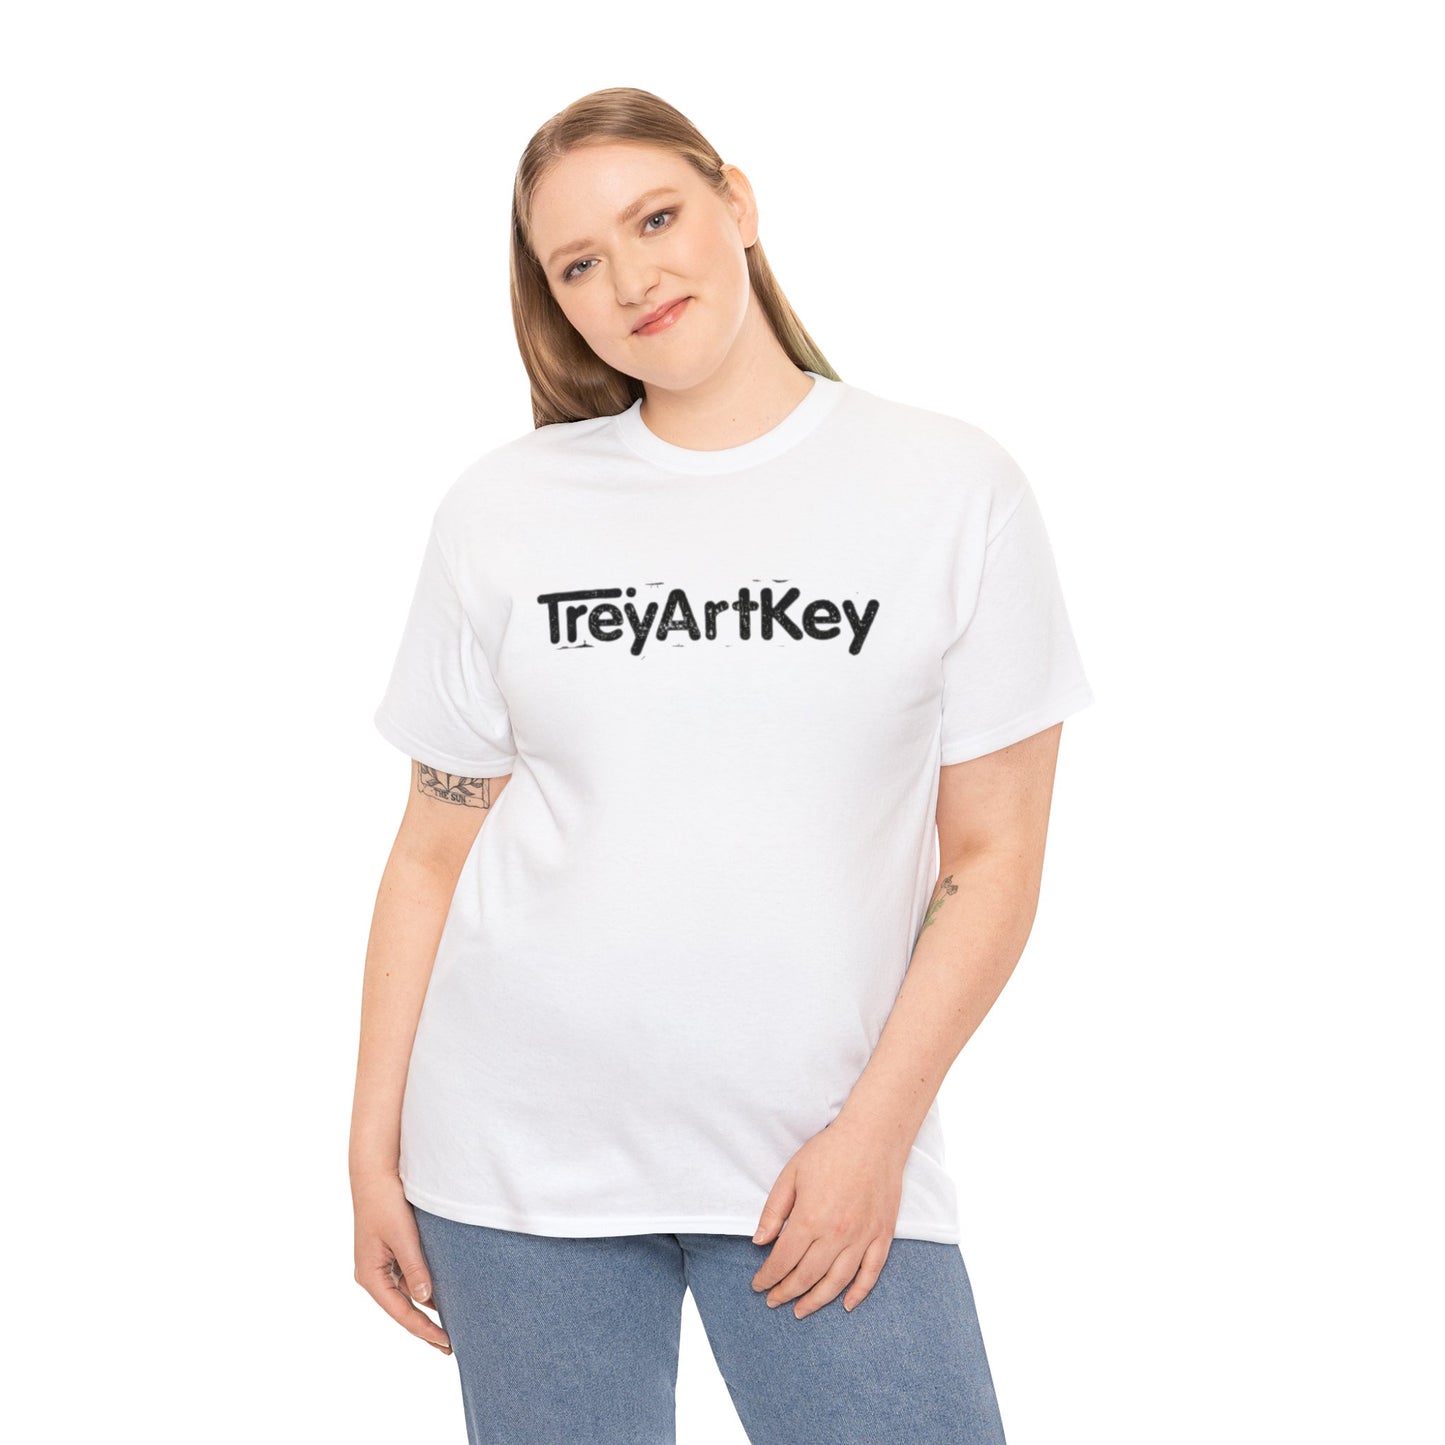 TreyArtKey Stamp Tshirt